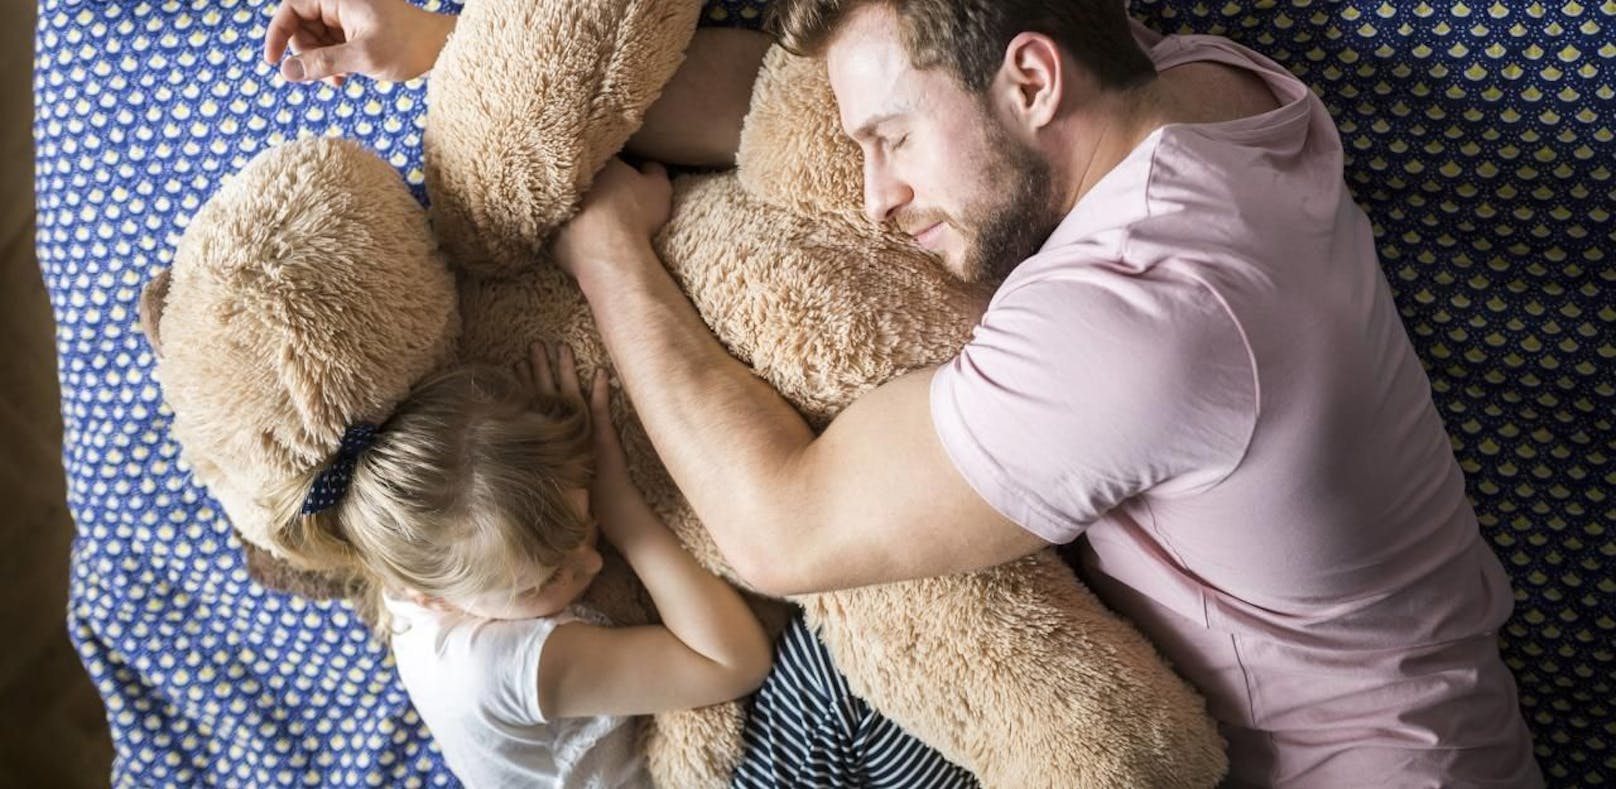 Das EU-Parlament setzte am Donnerstag eine neue Richtlinie um, die Vätern rechtlich einen bezahlten Papa-Urlaub von zehn Tagen ermöglicht.